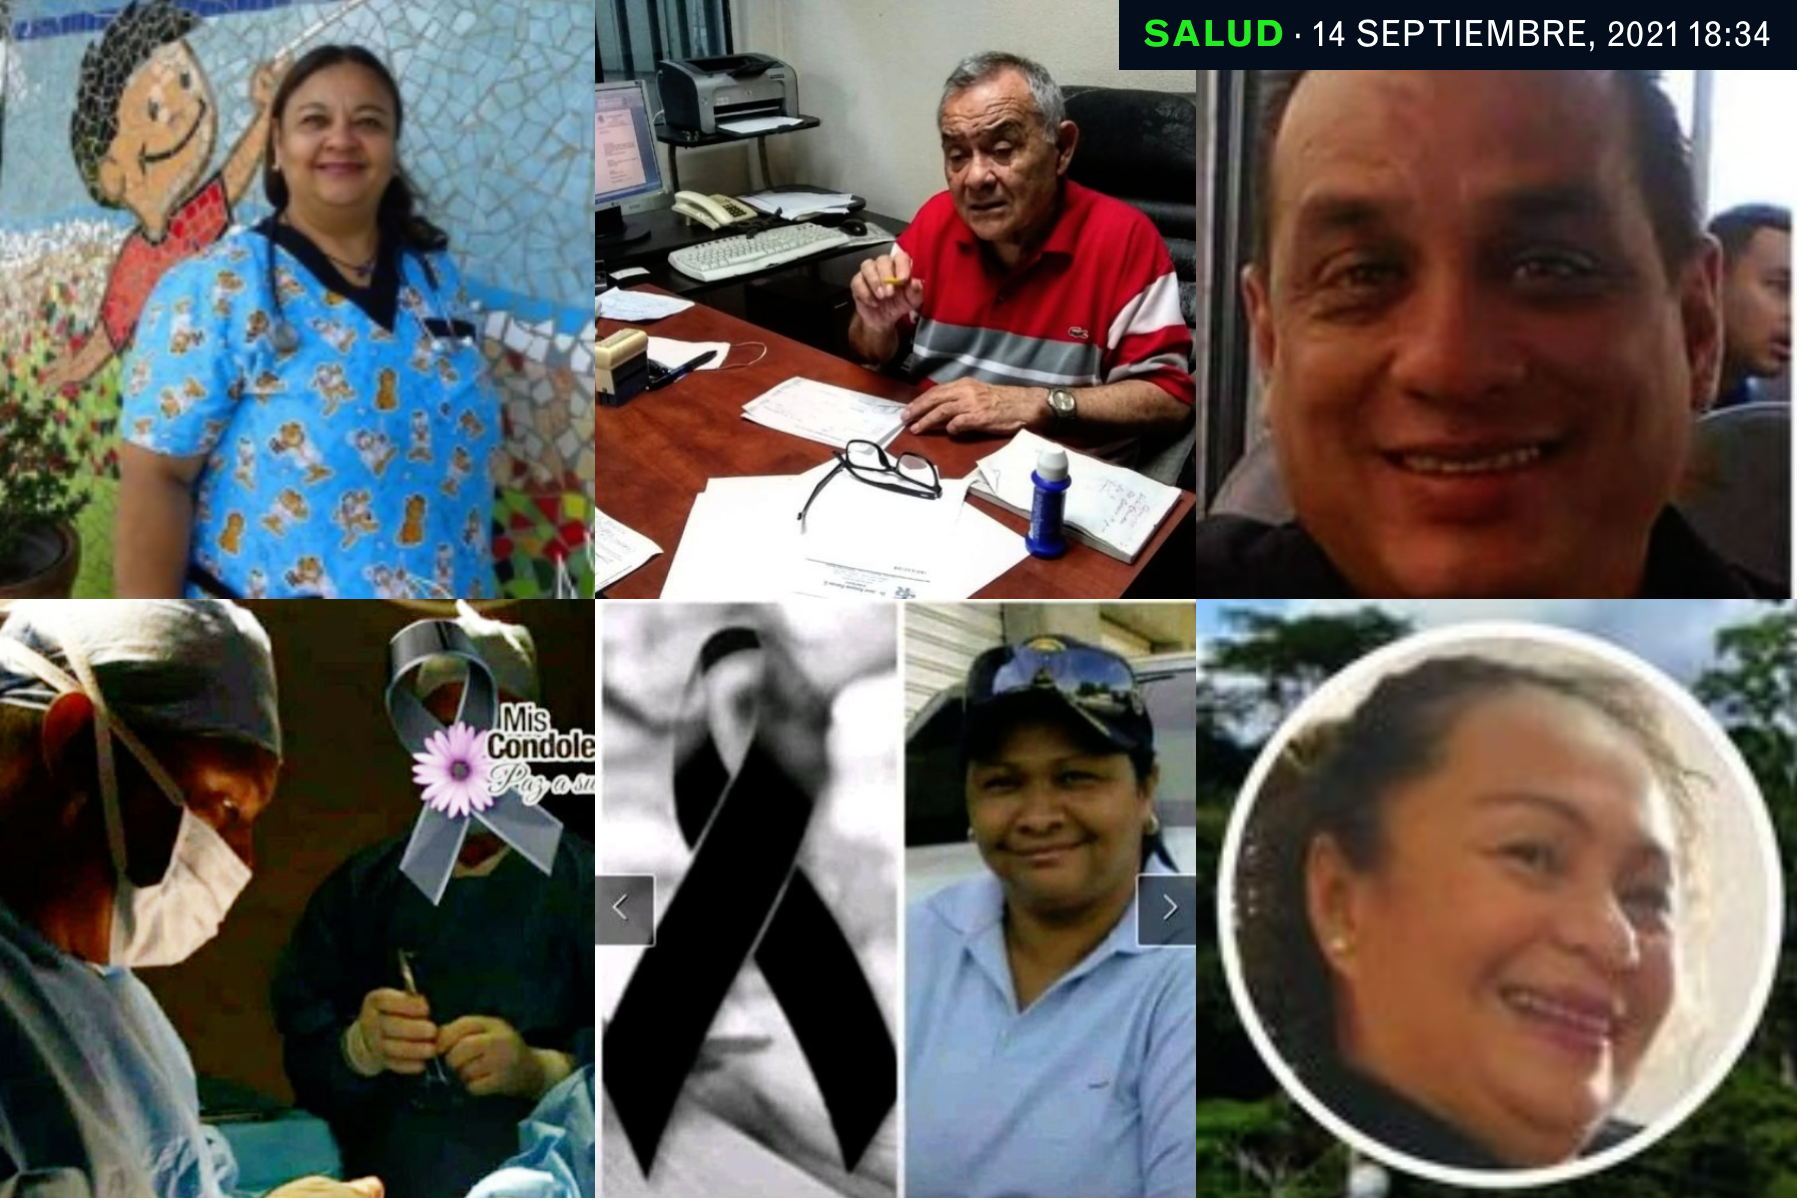 Fallecen siete trabajadores sanitarios por COVID-19 en septiembre